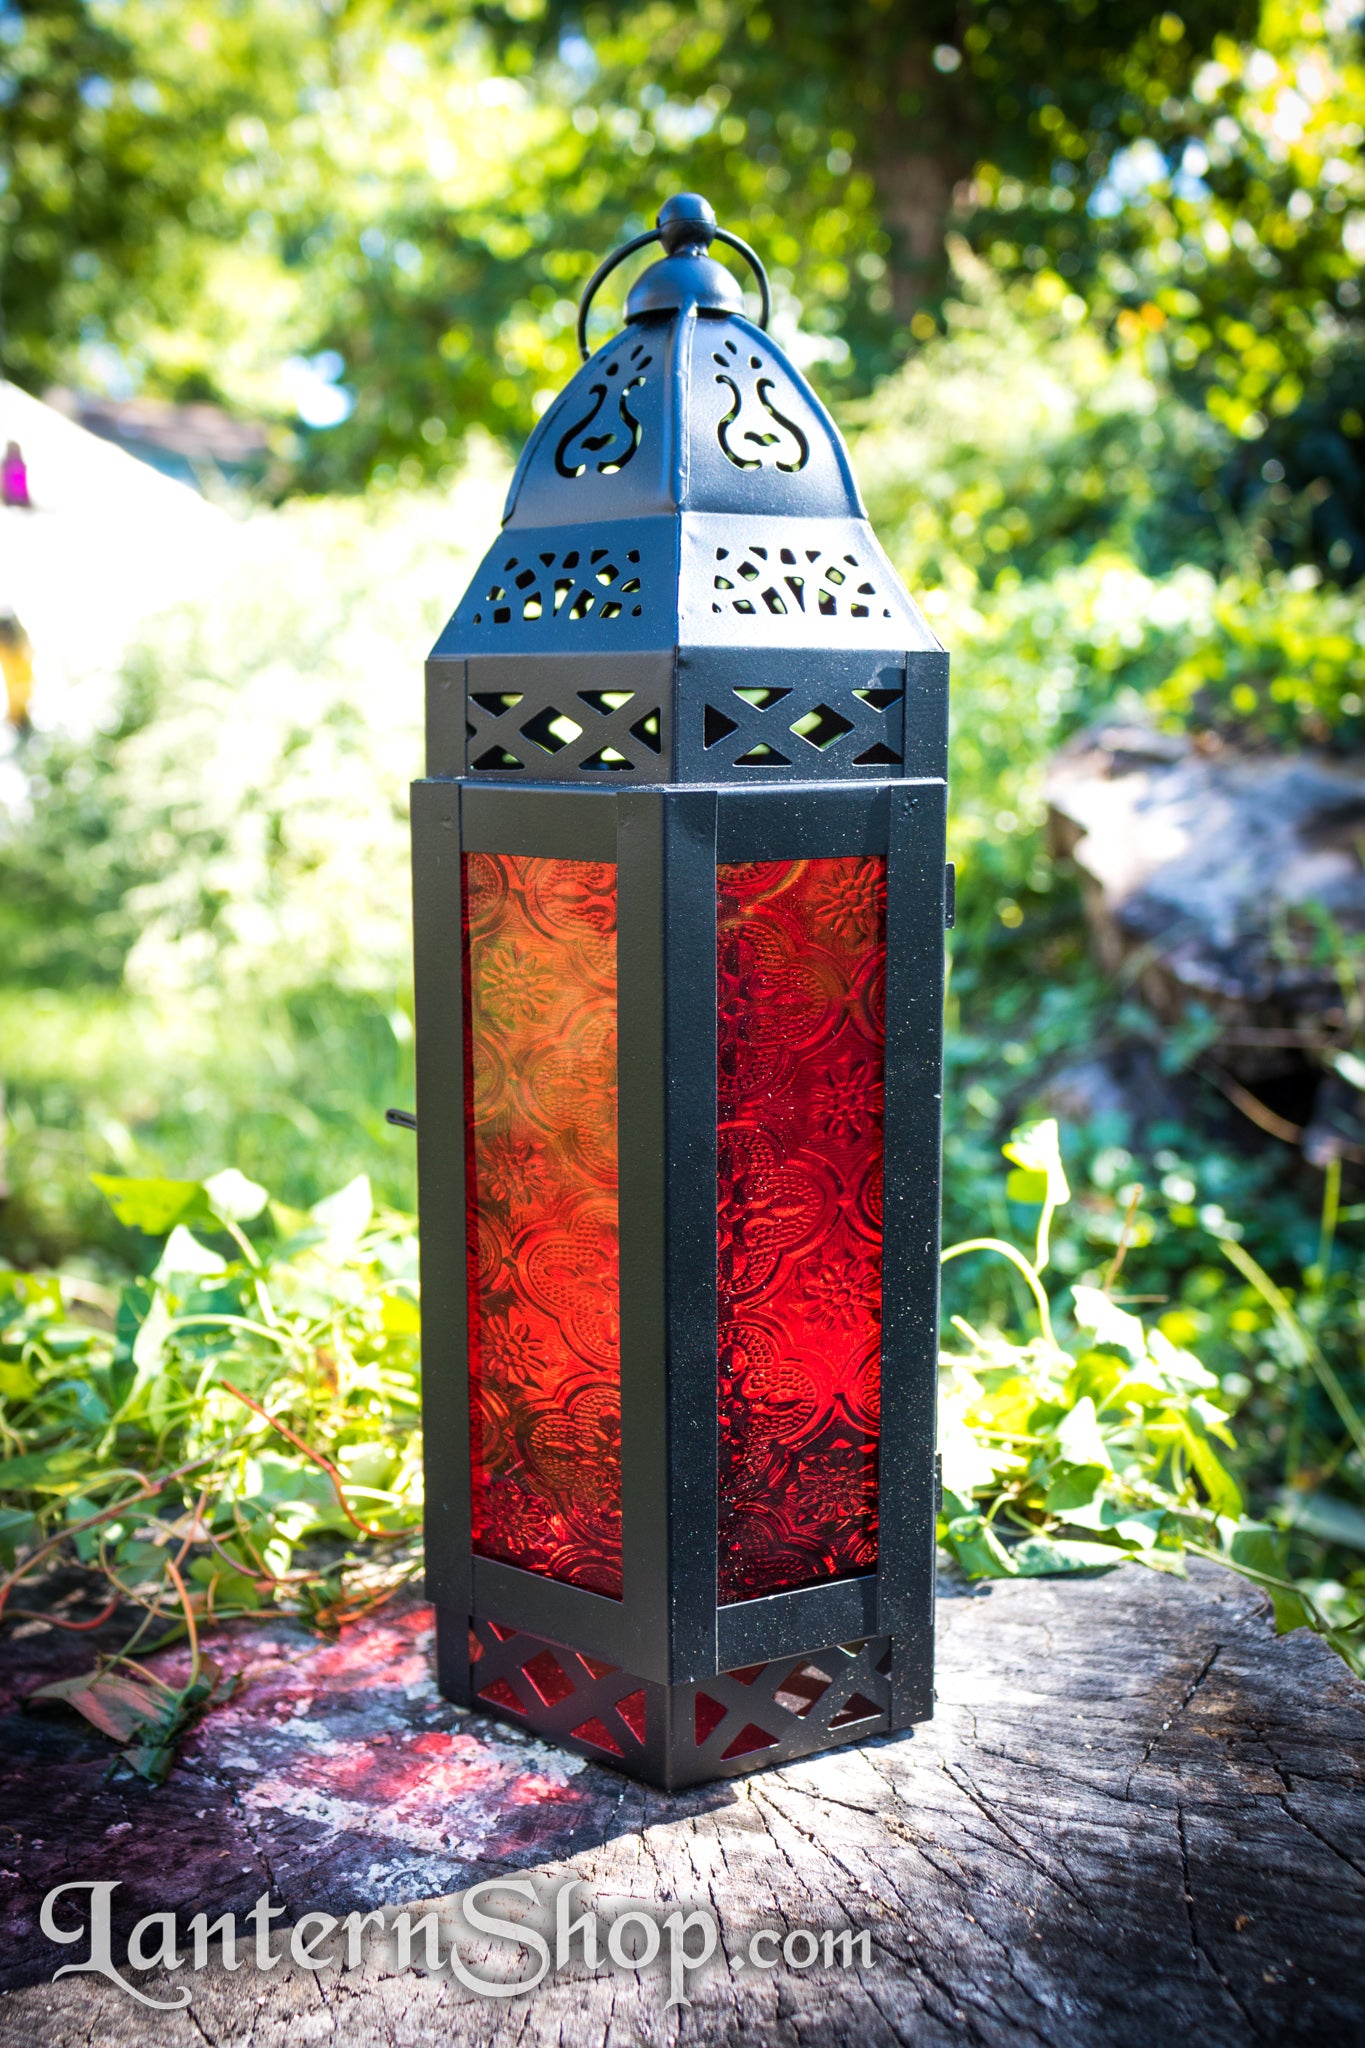 Lyre tower lantern – LanternShop.com by Tamerlane Yurts